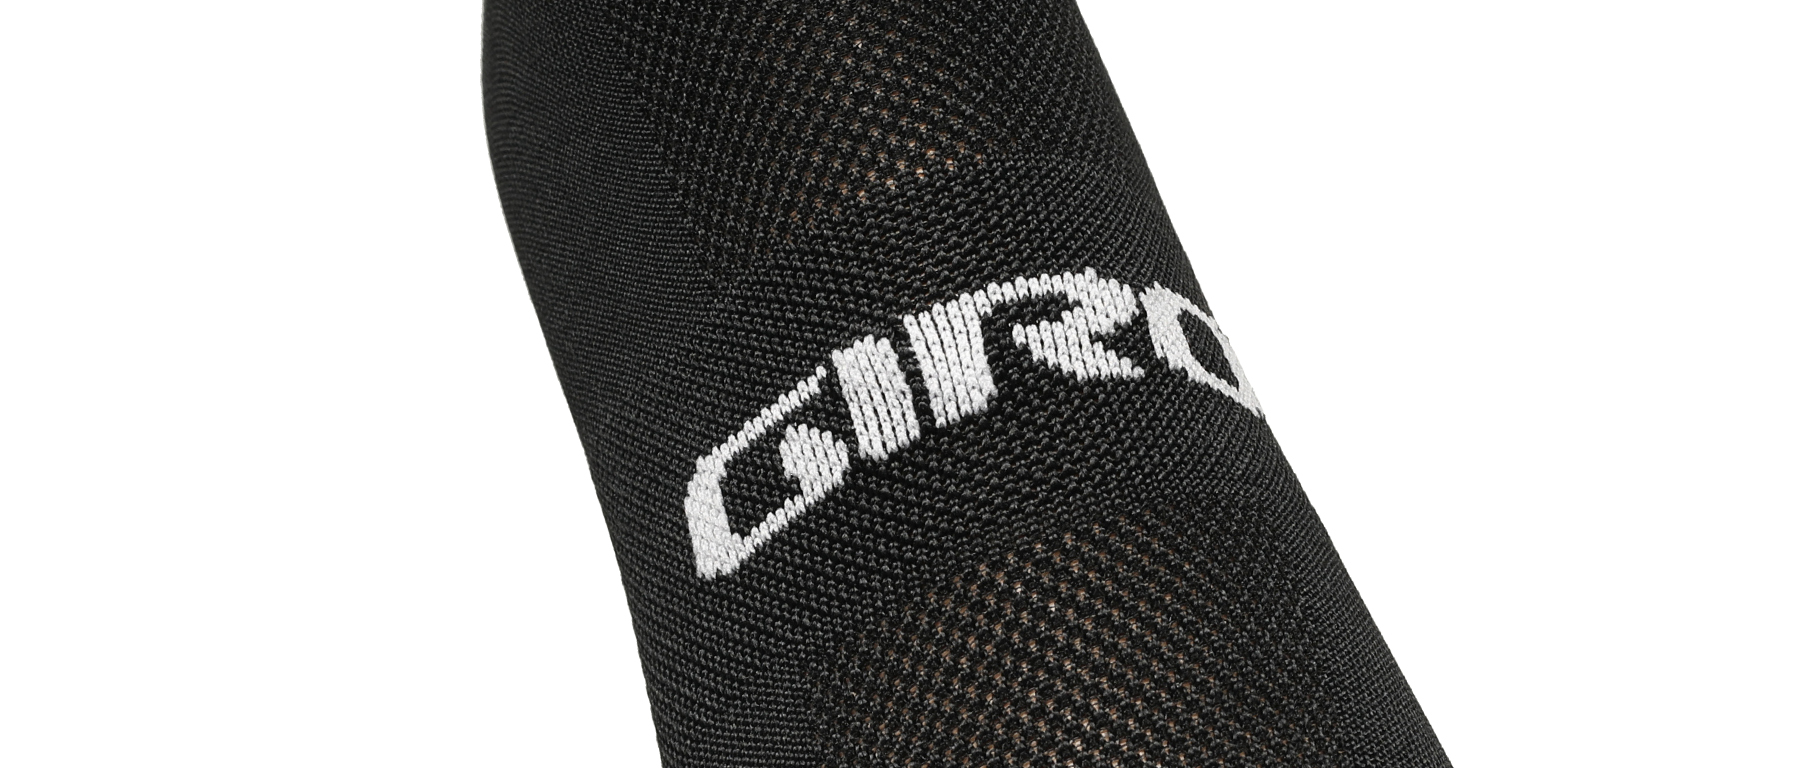 Giro Comp High Rise Socks